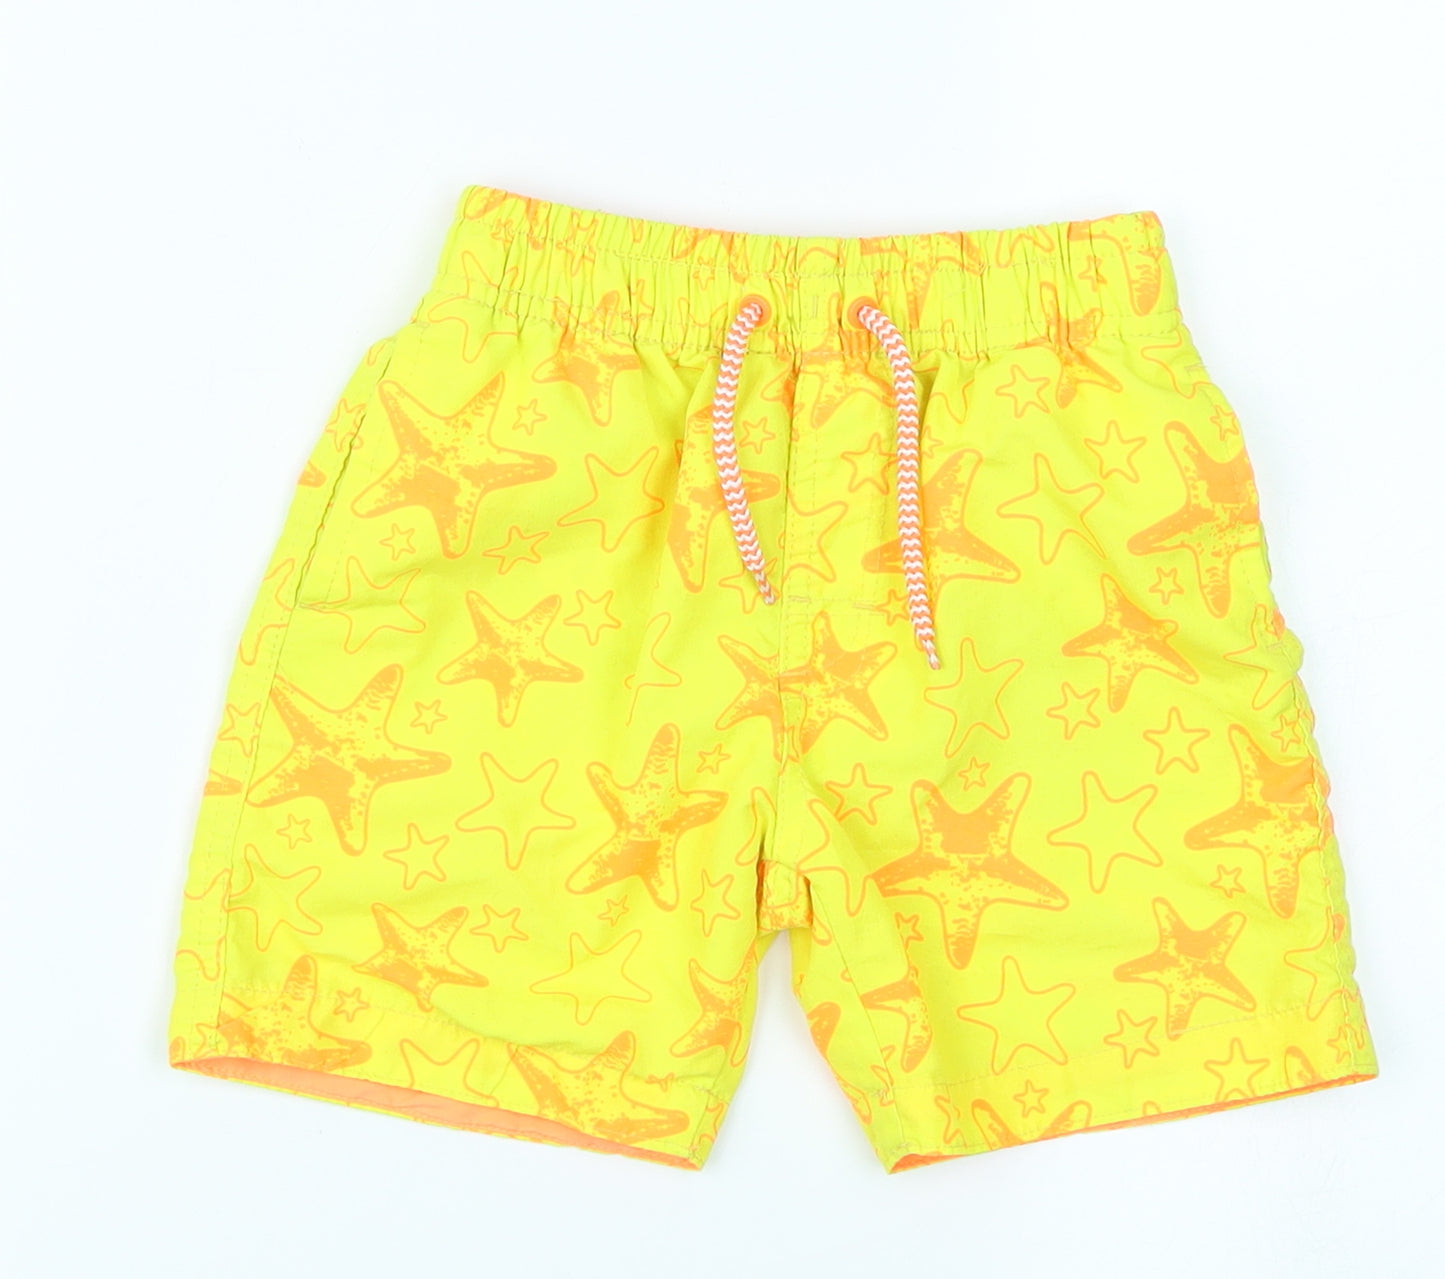 Rebel Boys Yellow   Sweat Shorts Size 3-4 Years